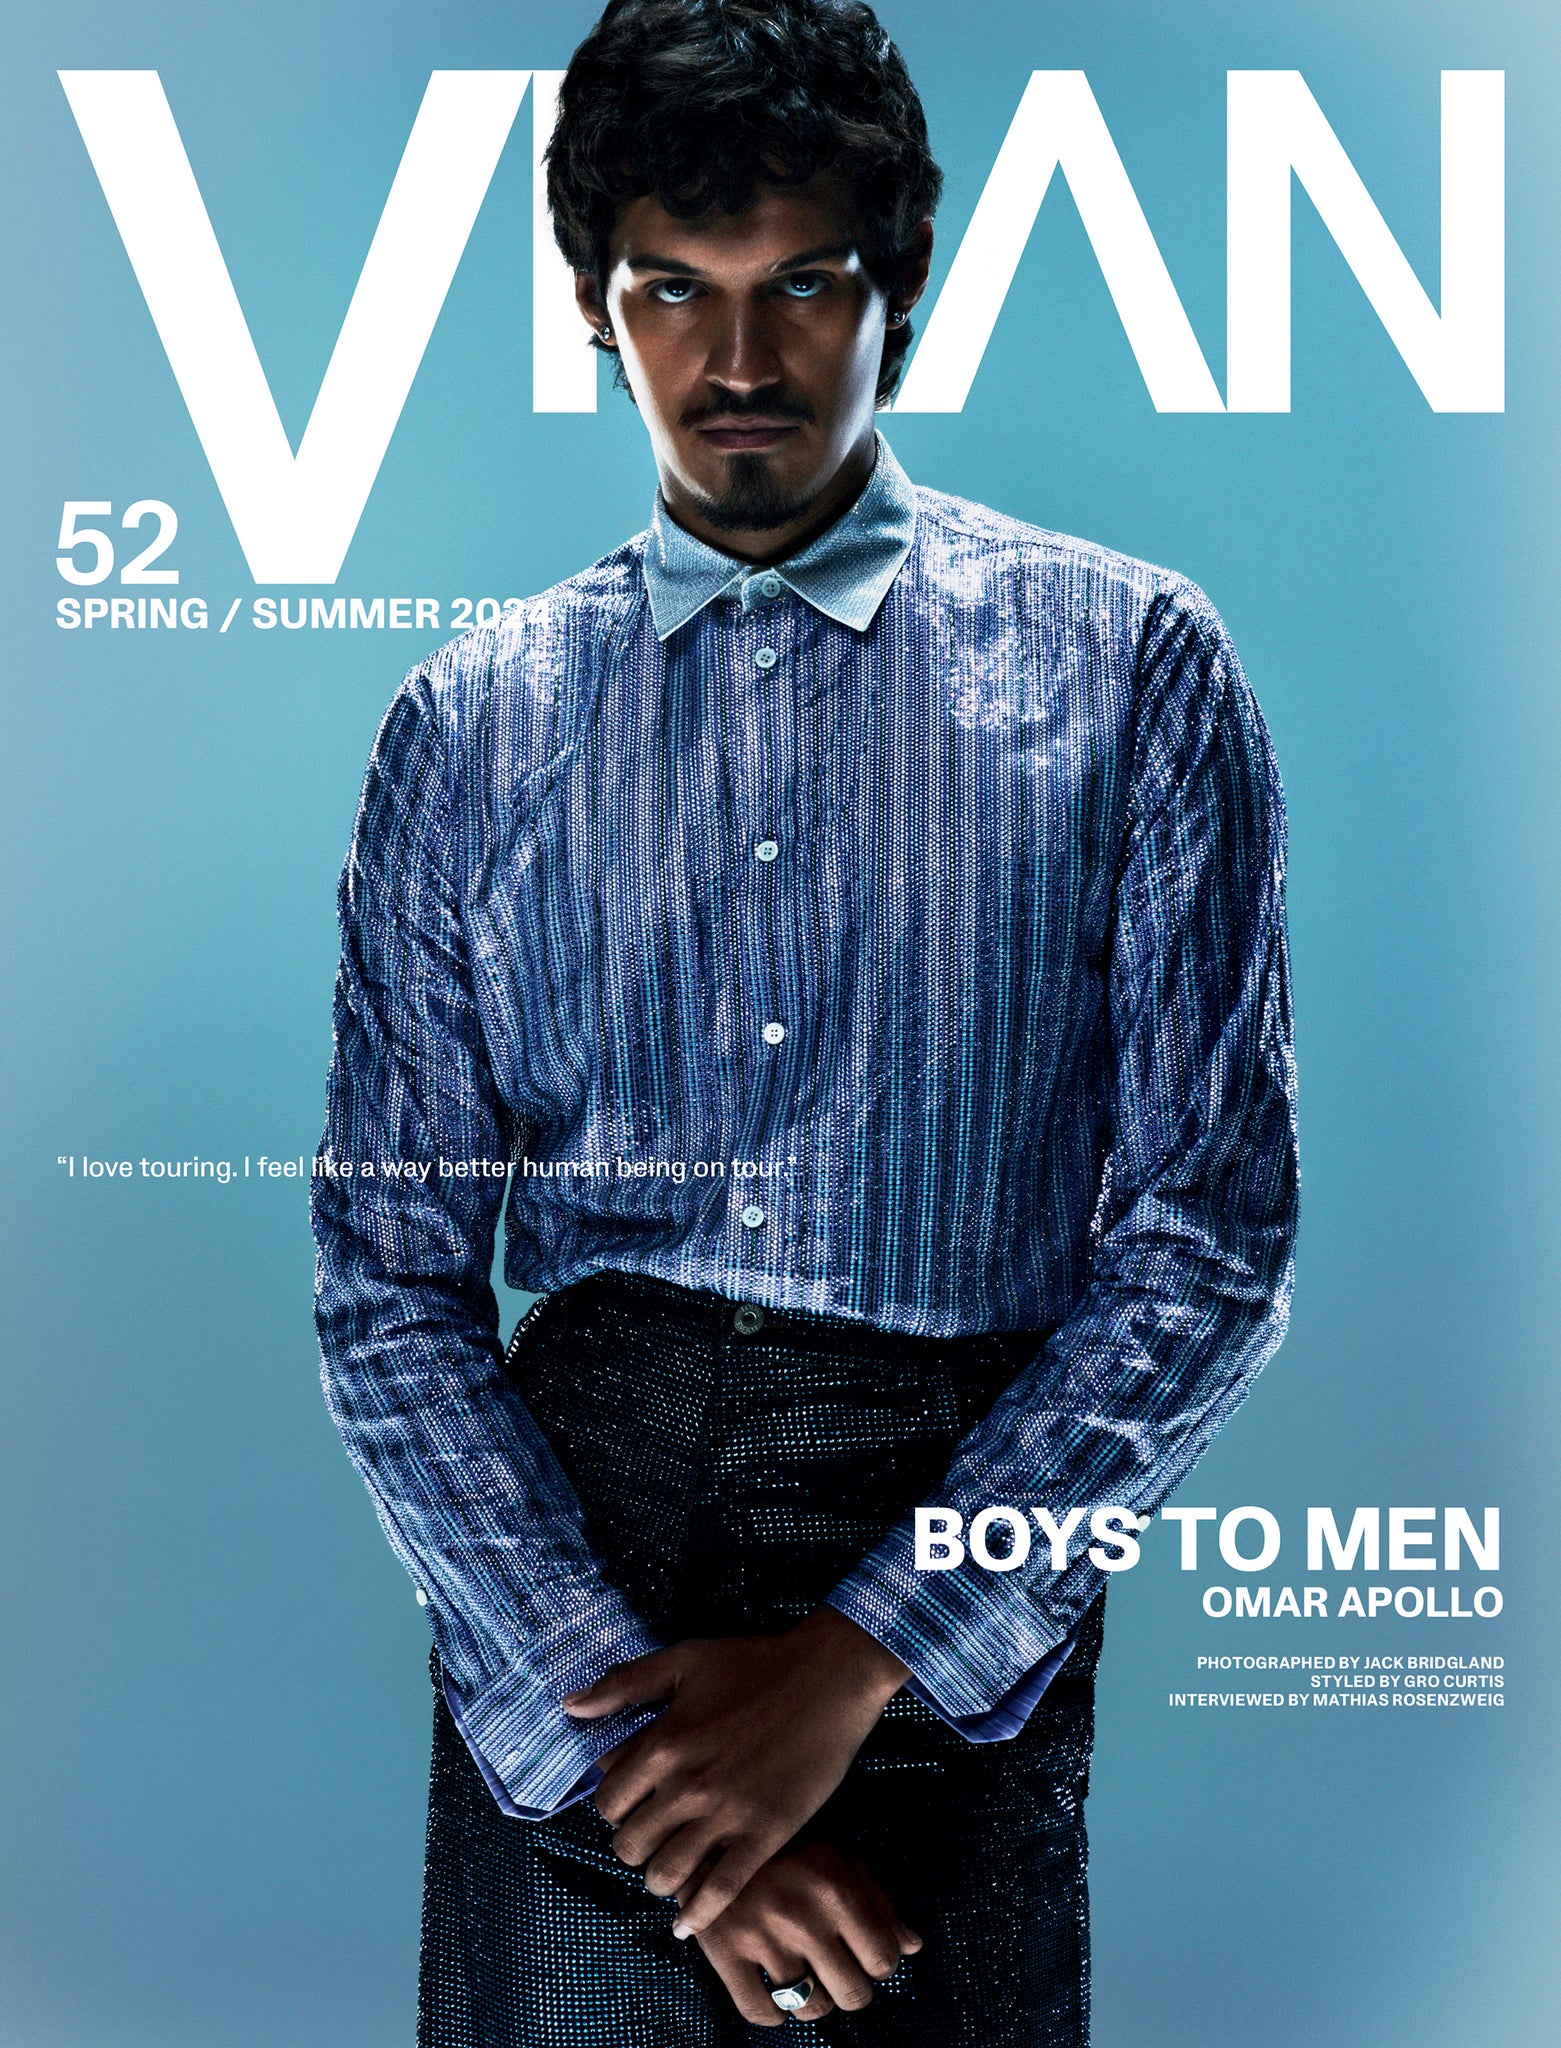 VMAN 52: "BOYS TO MEN"